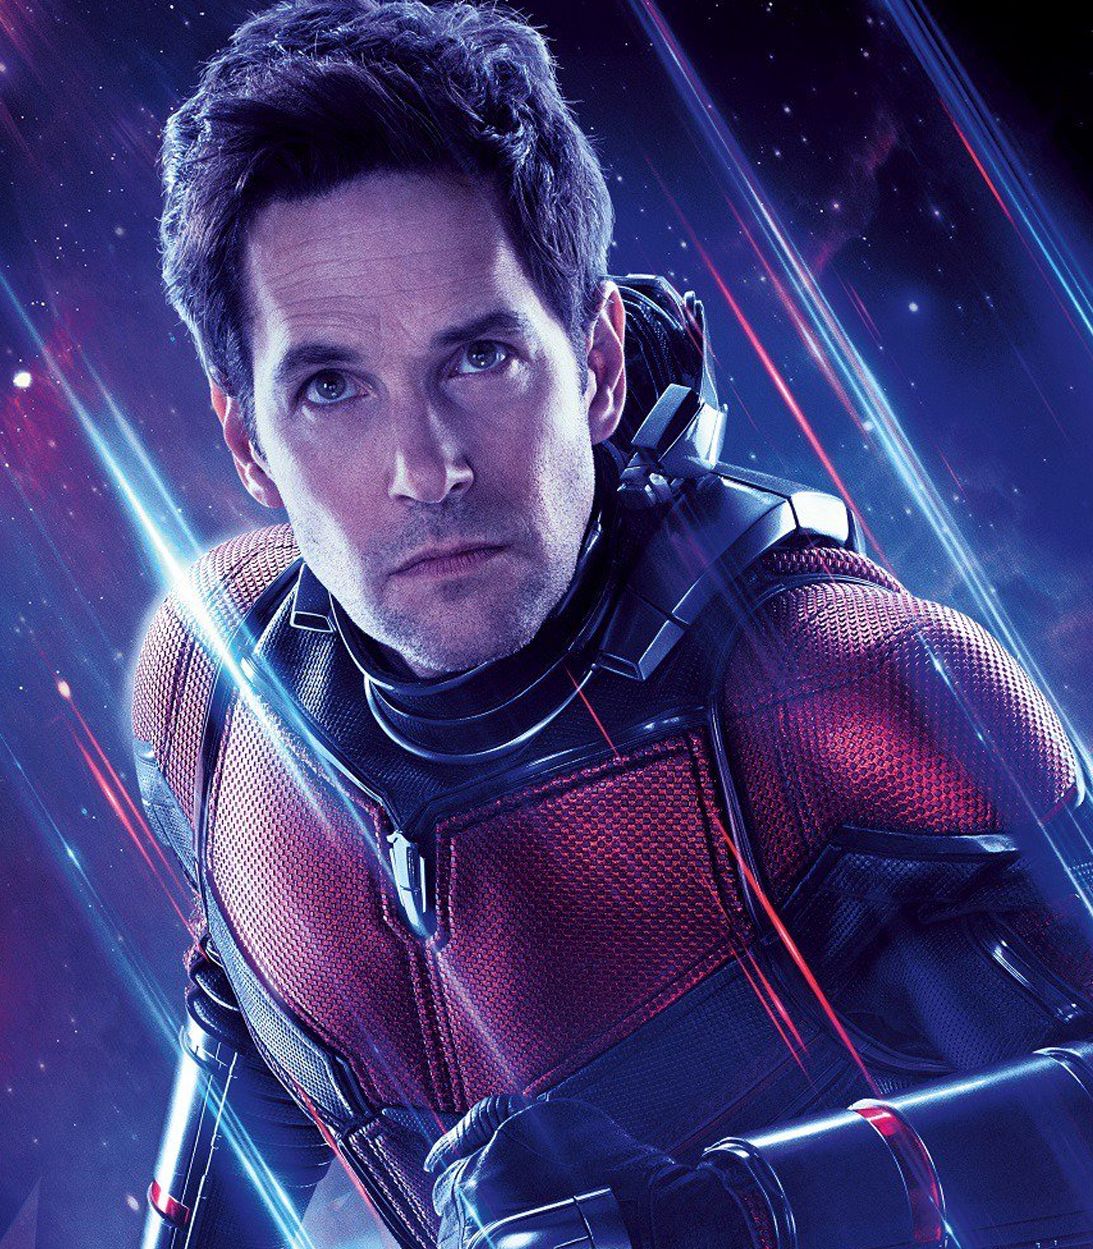 Paul Rudd as Scott Lang Ant-Man in Avengers Endgame